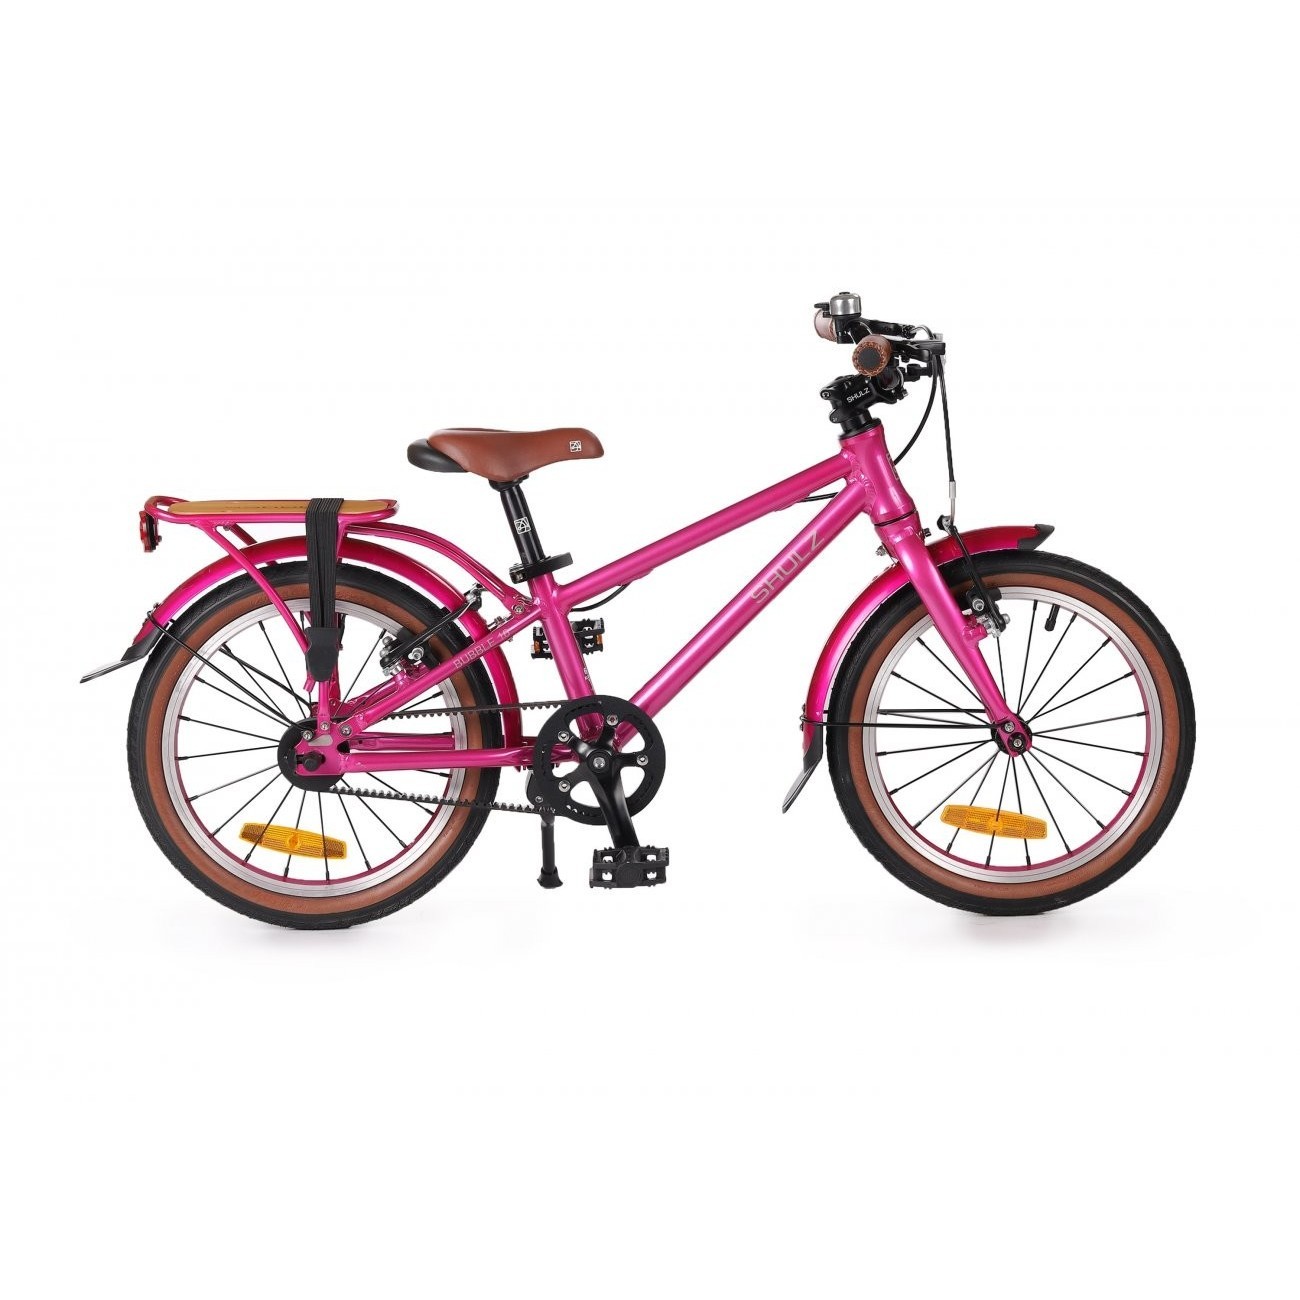 Шульц бабл. Велосипеды Shulz Bubble 20 2018. Детский велосипед Шульц 16. Shulz велосипед Chloe 16 зеленый. Кий велосипед Shulz Bubble 16.